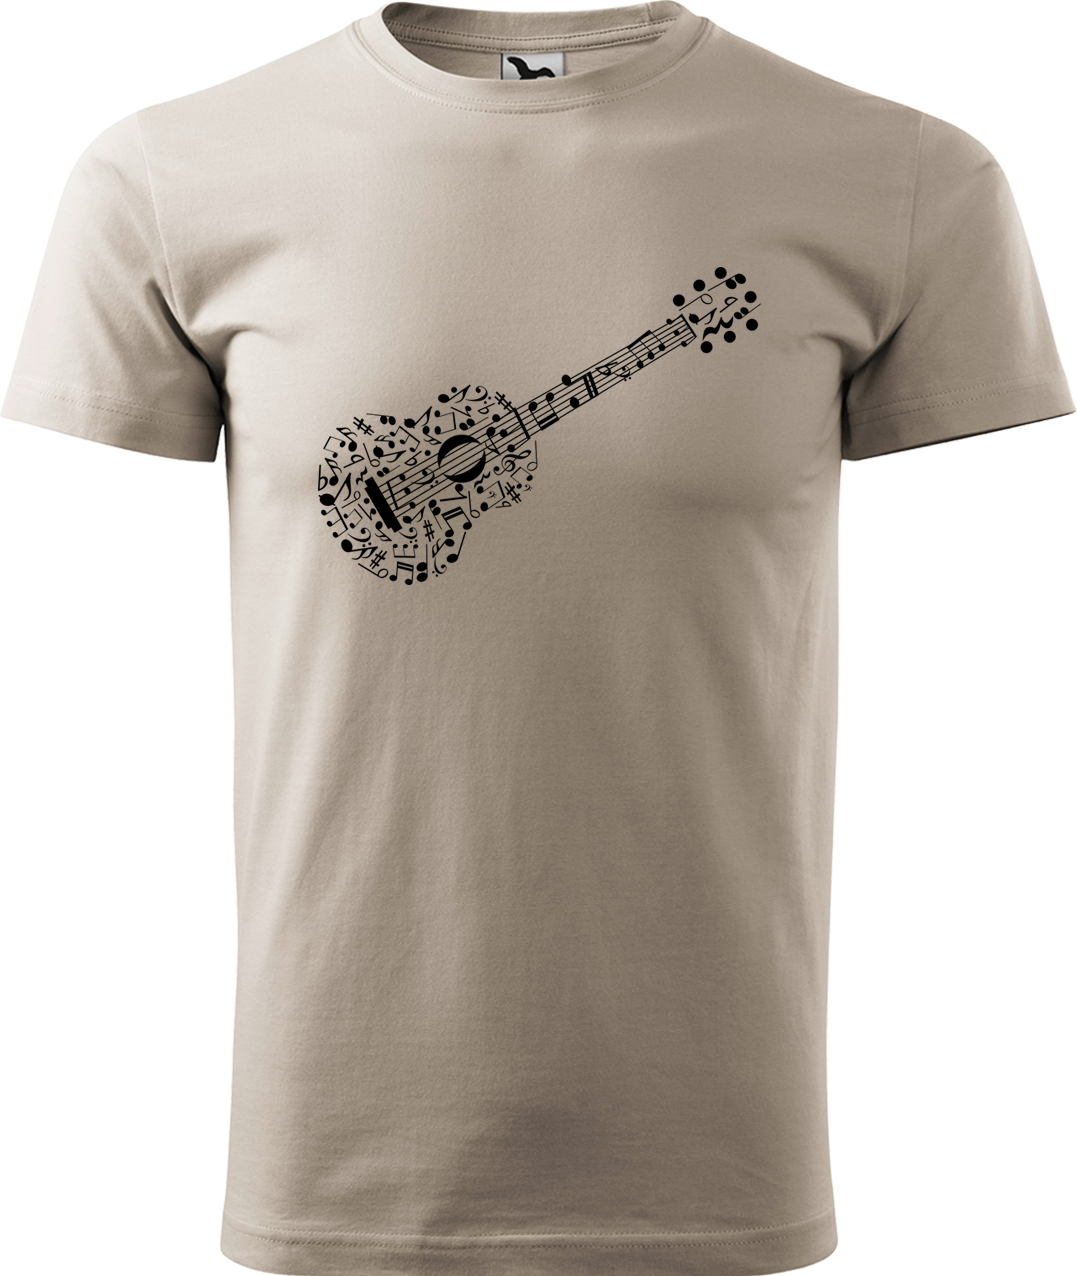 Pánské tričko s kytarou - Kytara z not Velikost: M, Barva: Ledově šedá (51), Střih: pánský